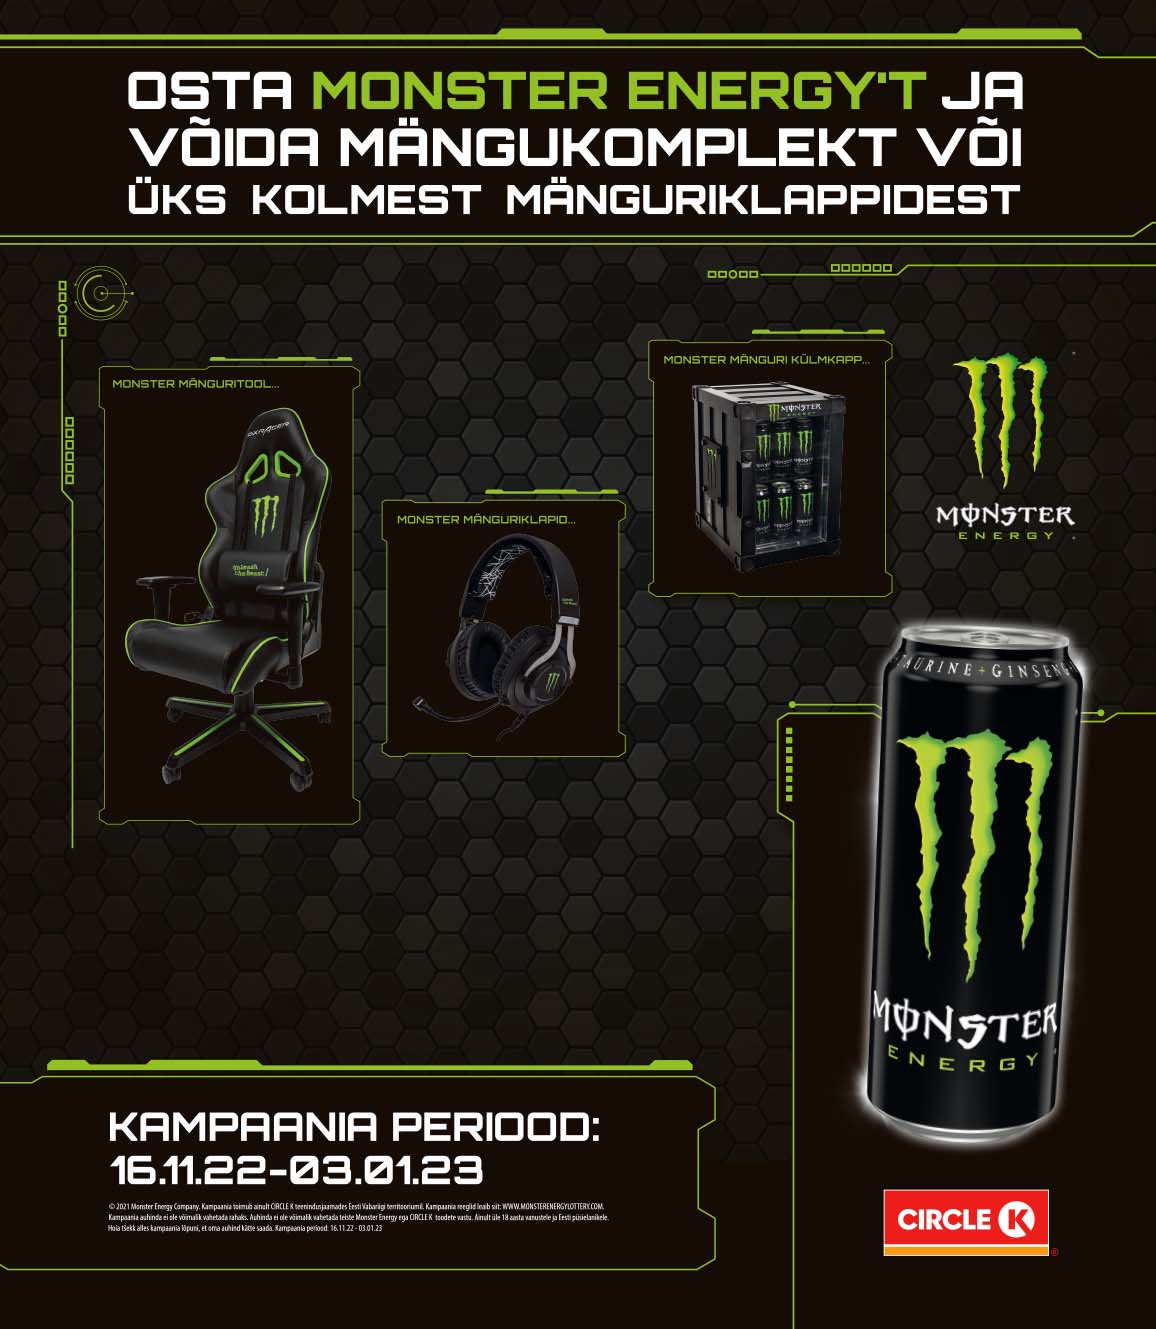 Osta Monster Energy't ja võida mängukomplekt või üks kolmest mänguriklappidest!